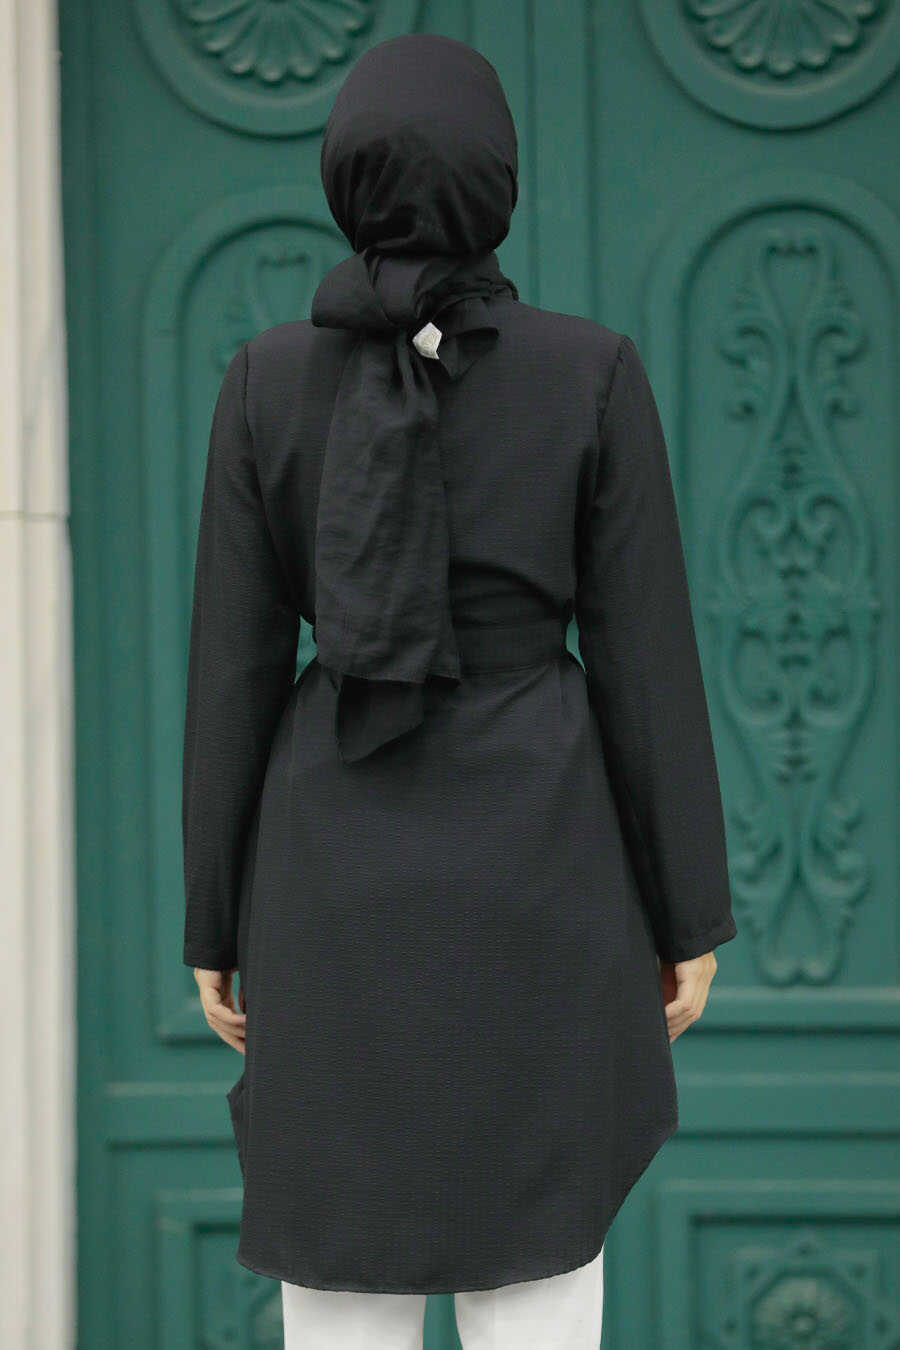 Neva Style - Black Islamic Clothing Tunic 4681S